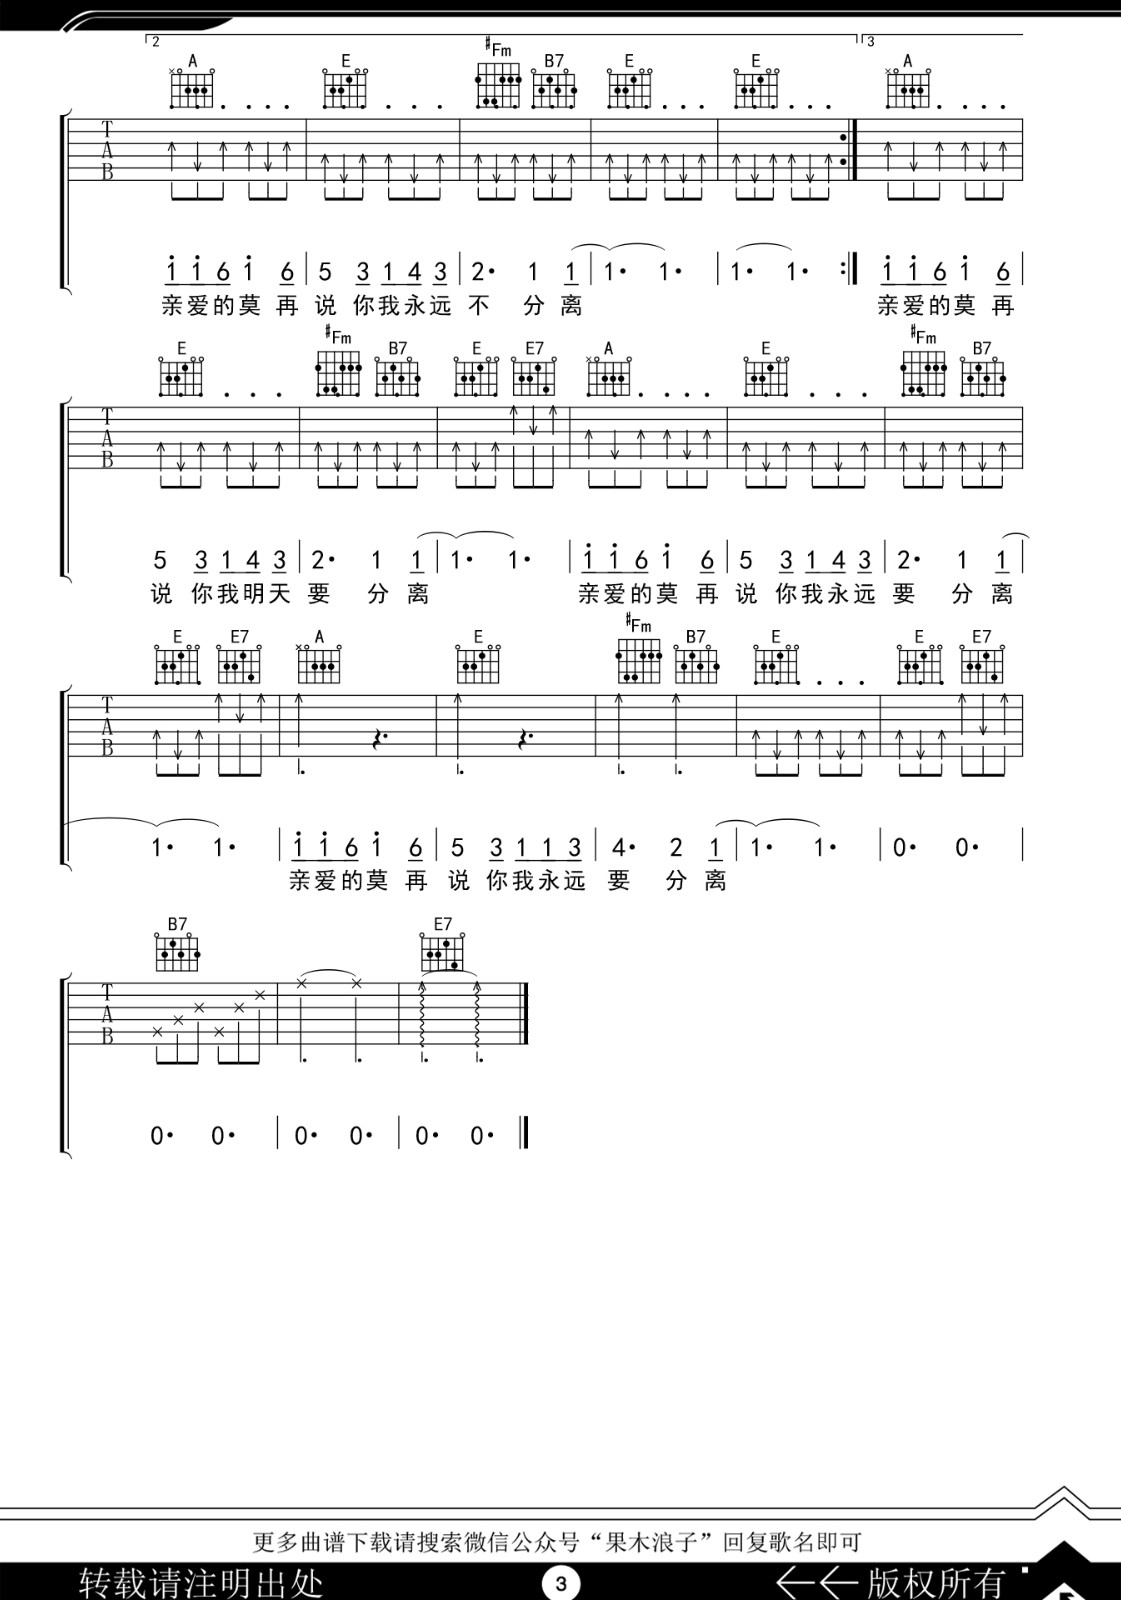 恋曲1980吉他谱,原版罗大佑歌曲,简单E调指弹曲谱,高清六线乐谱